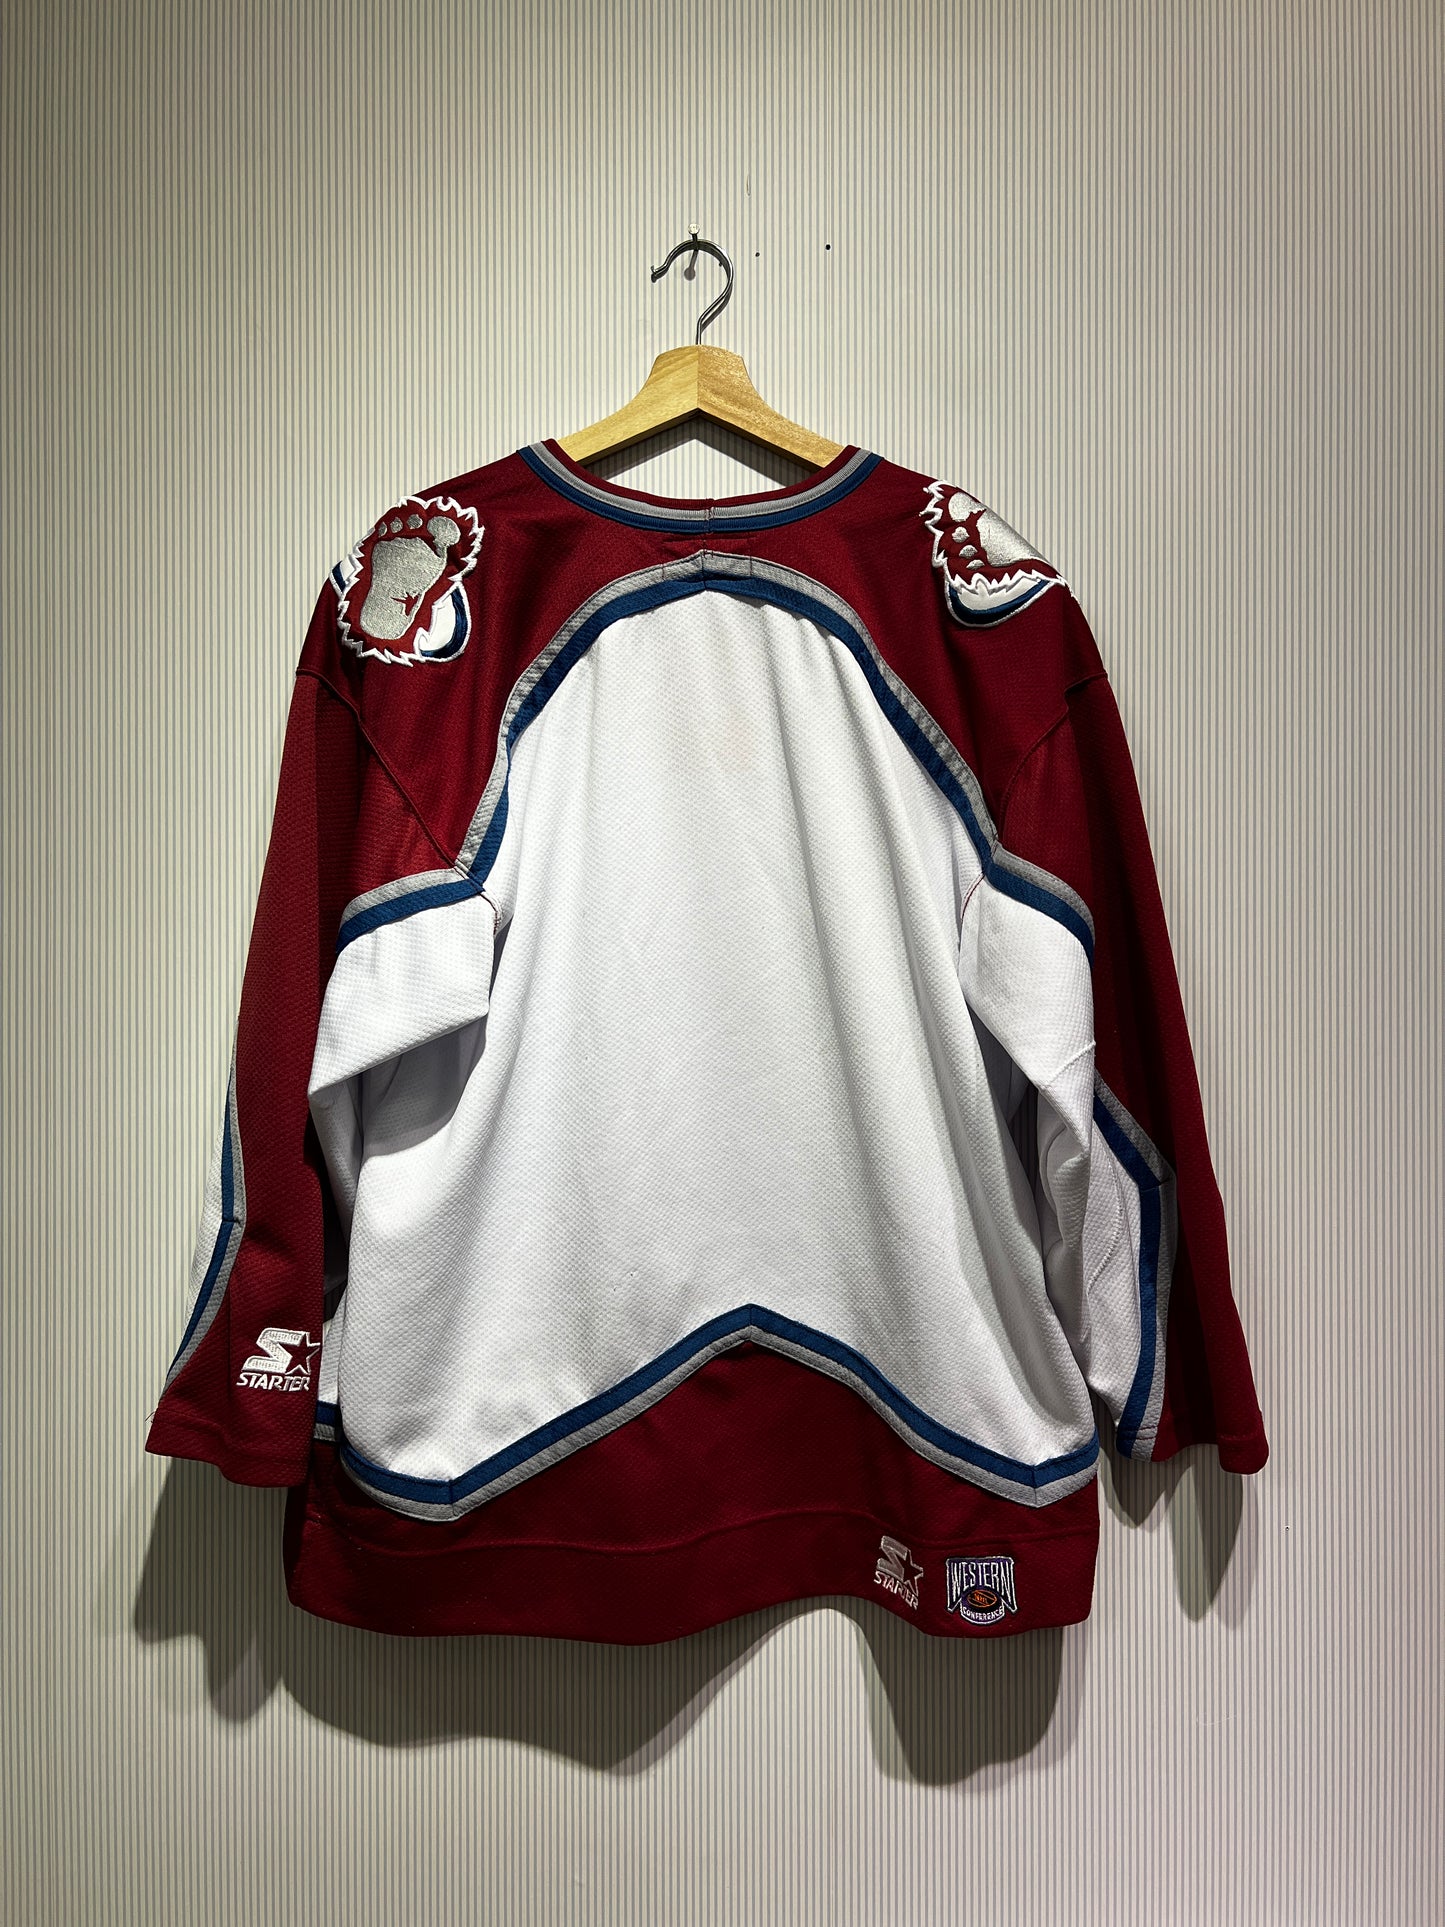 Vintage 90s Colorado Avalanche Starter NHL Hockey Jersey